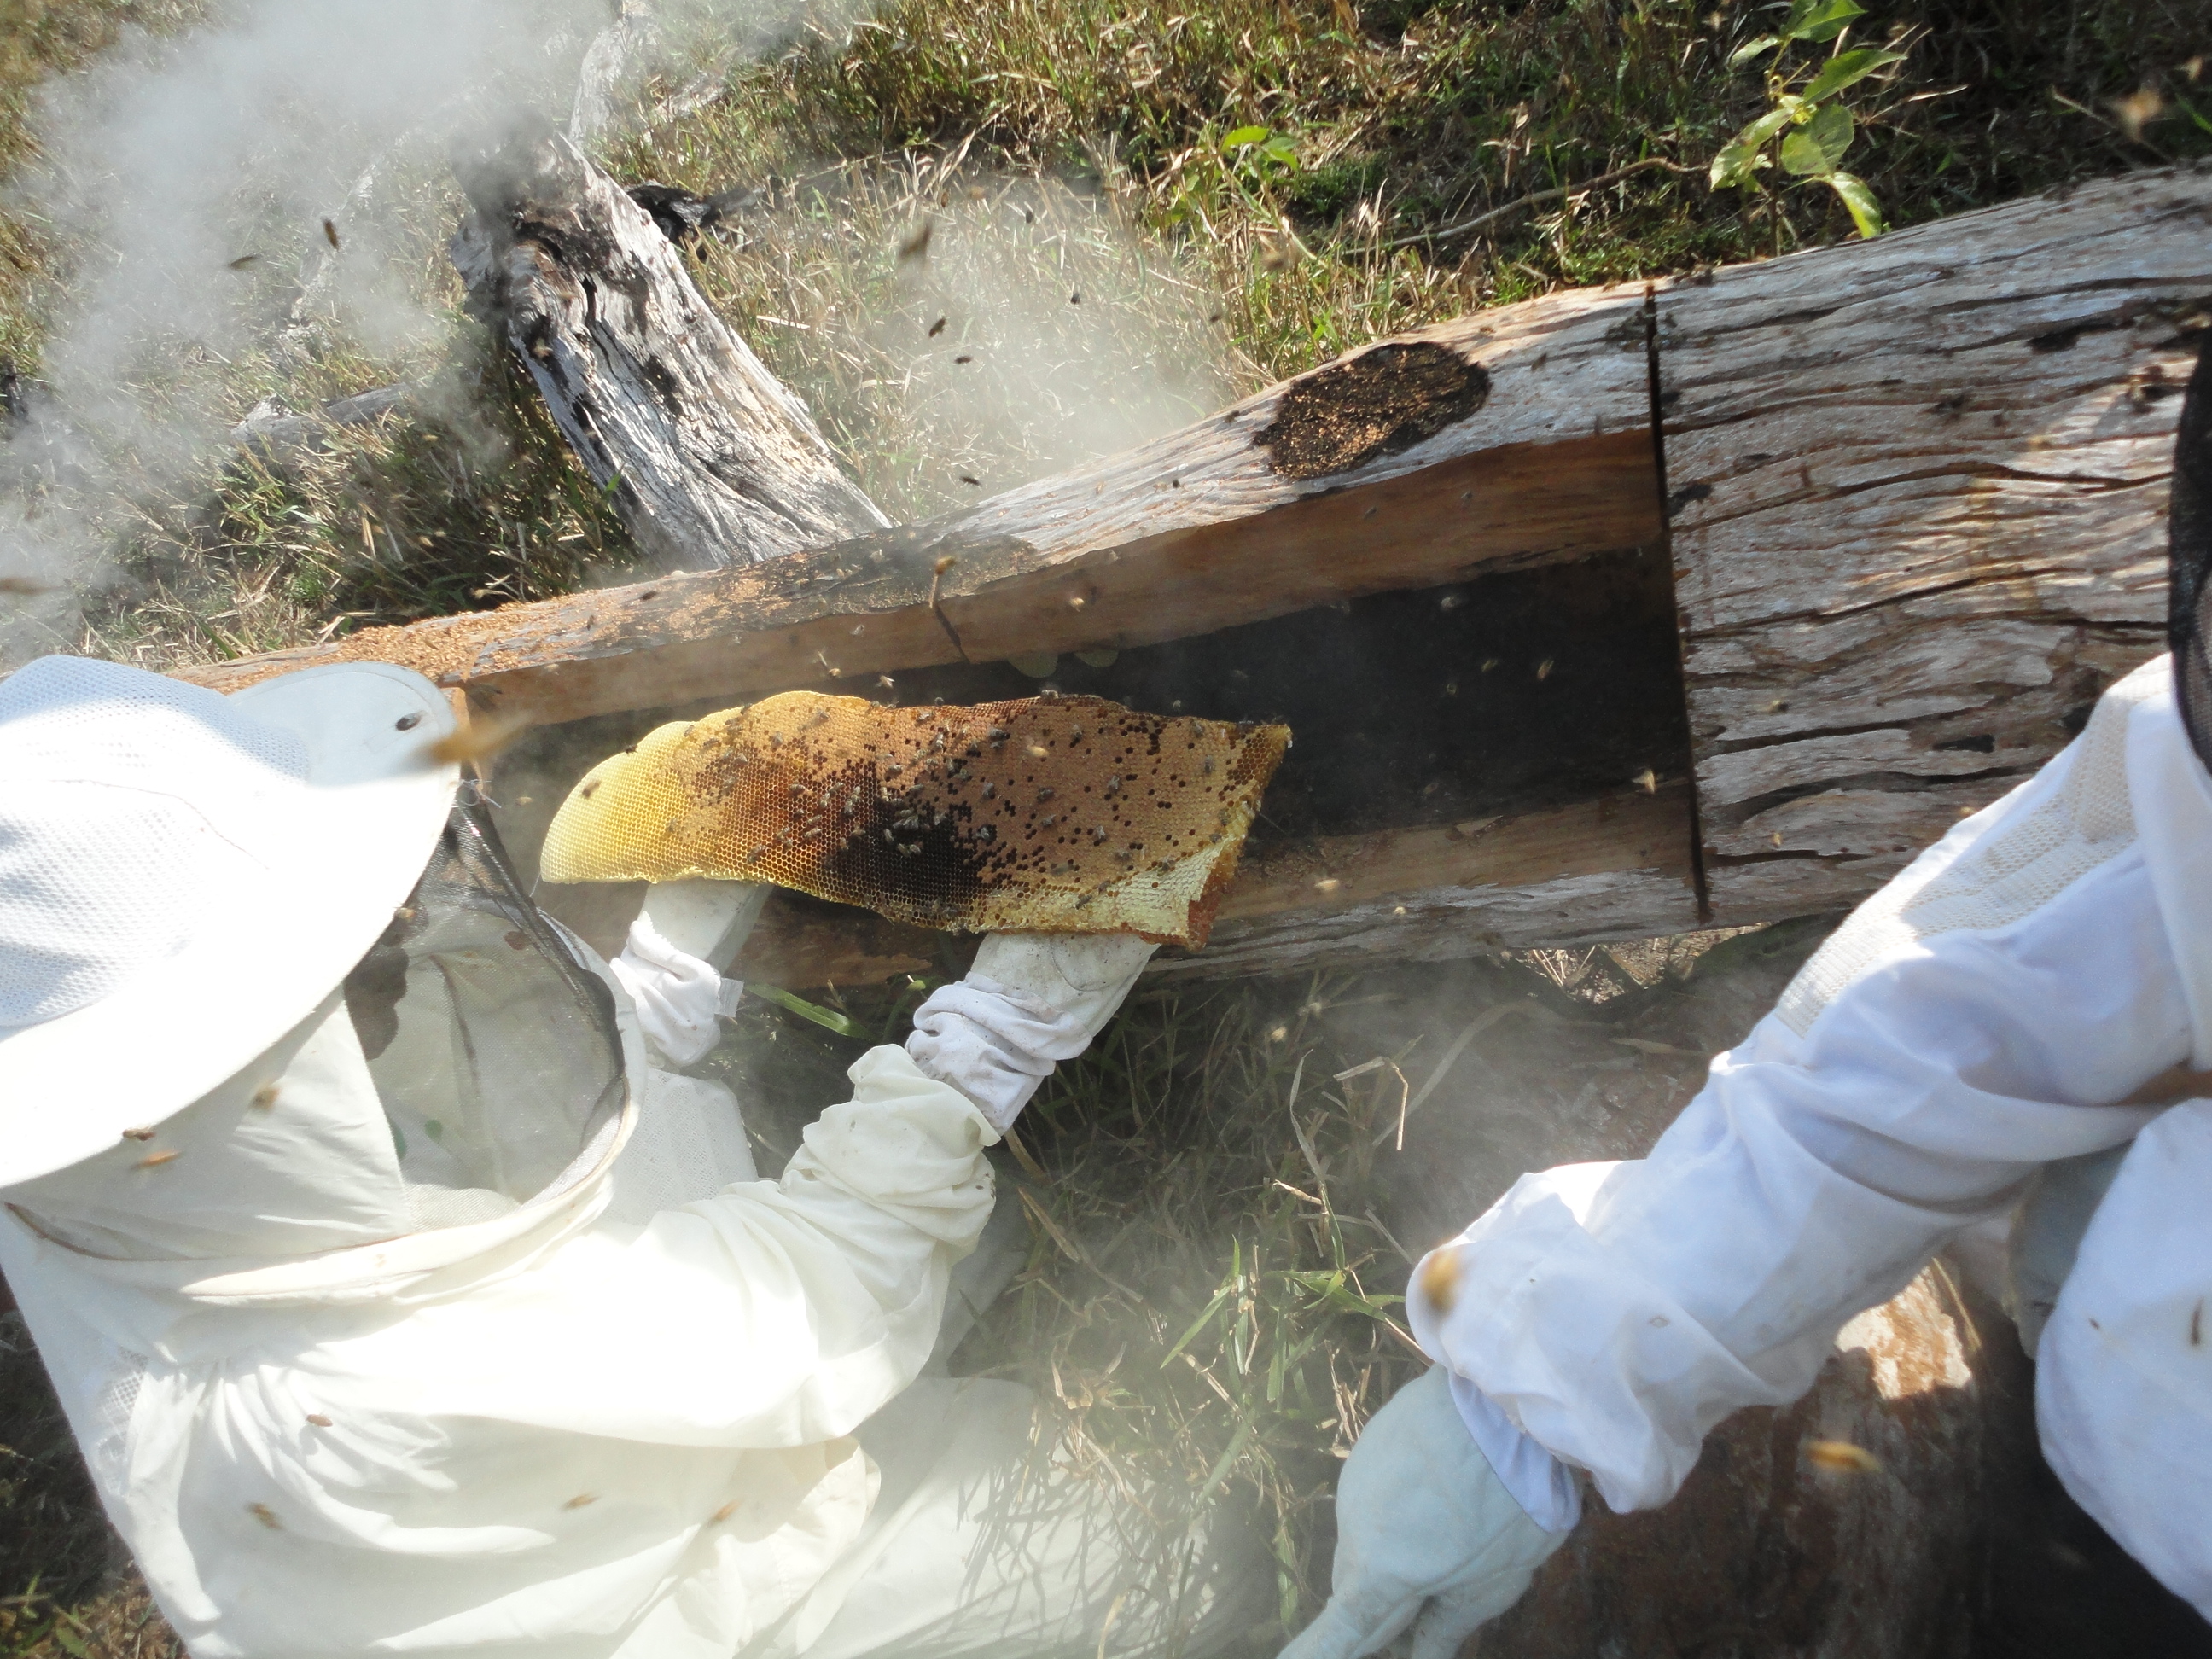 Capacitações foram oferecidas aos agricultores participantes do projeto; na foto, produtor segura parte de uma colmeia em aula prática do curso de apicultura